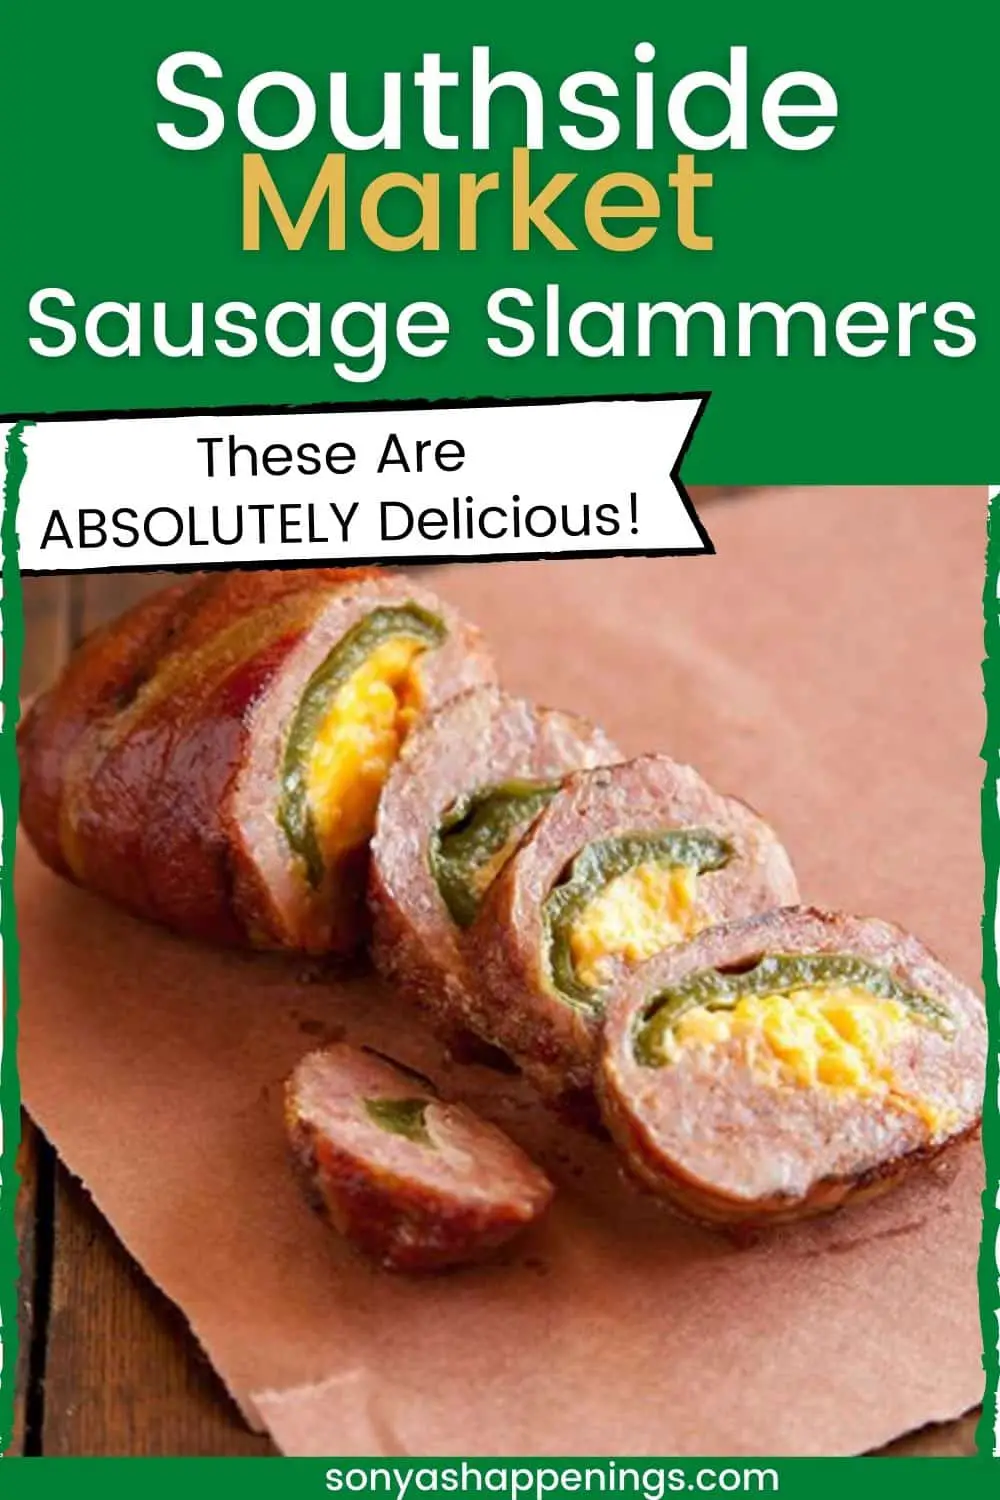 Southside Market & Barbeque Sausage Slammers